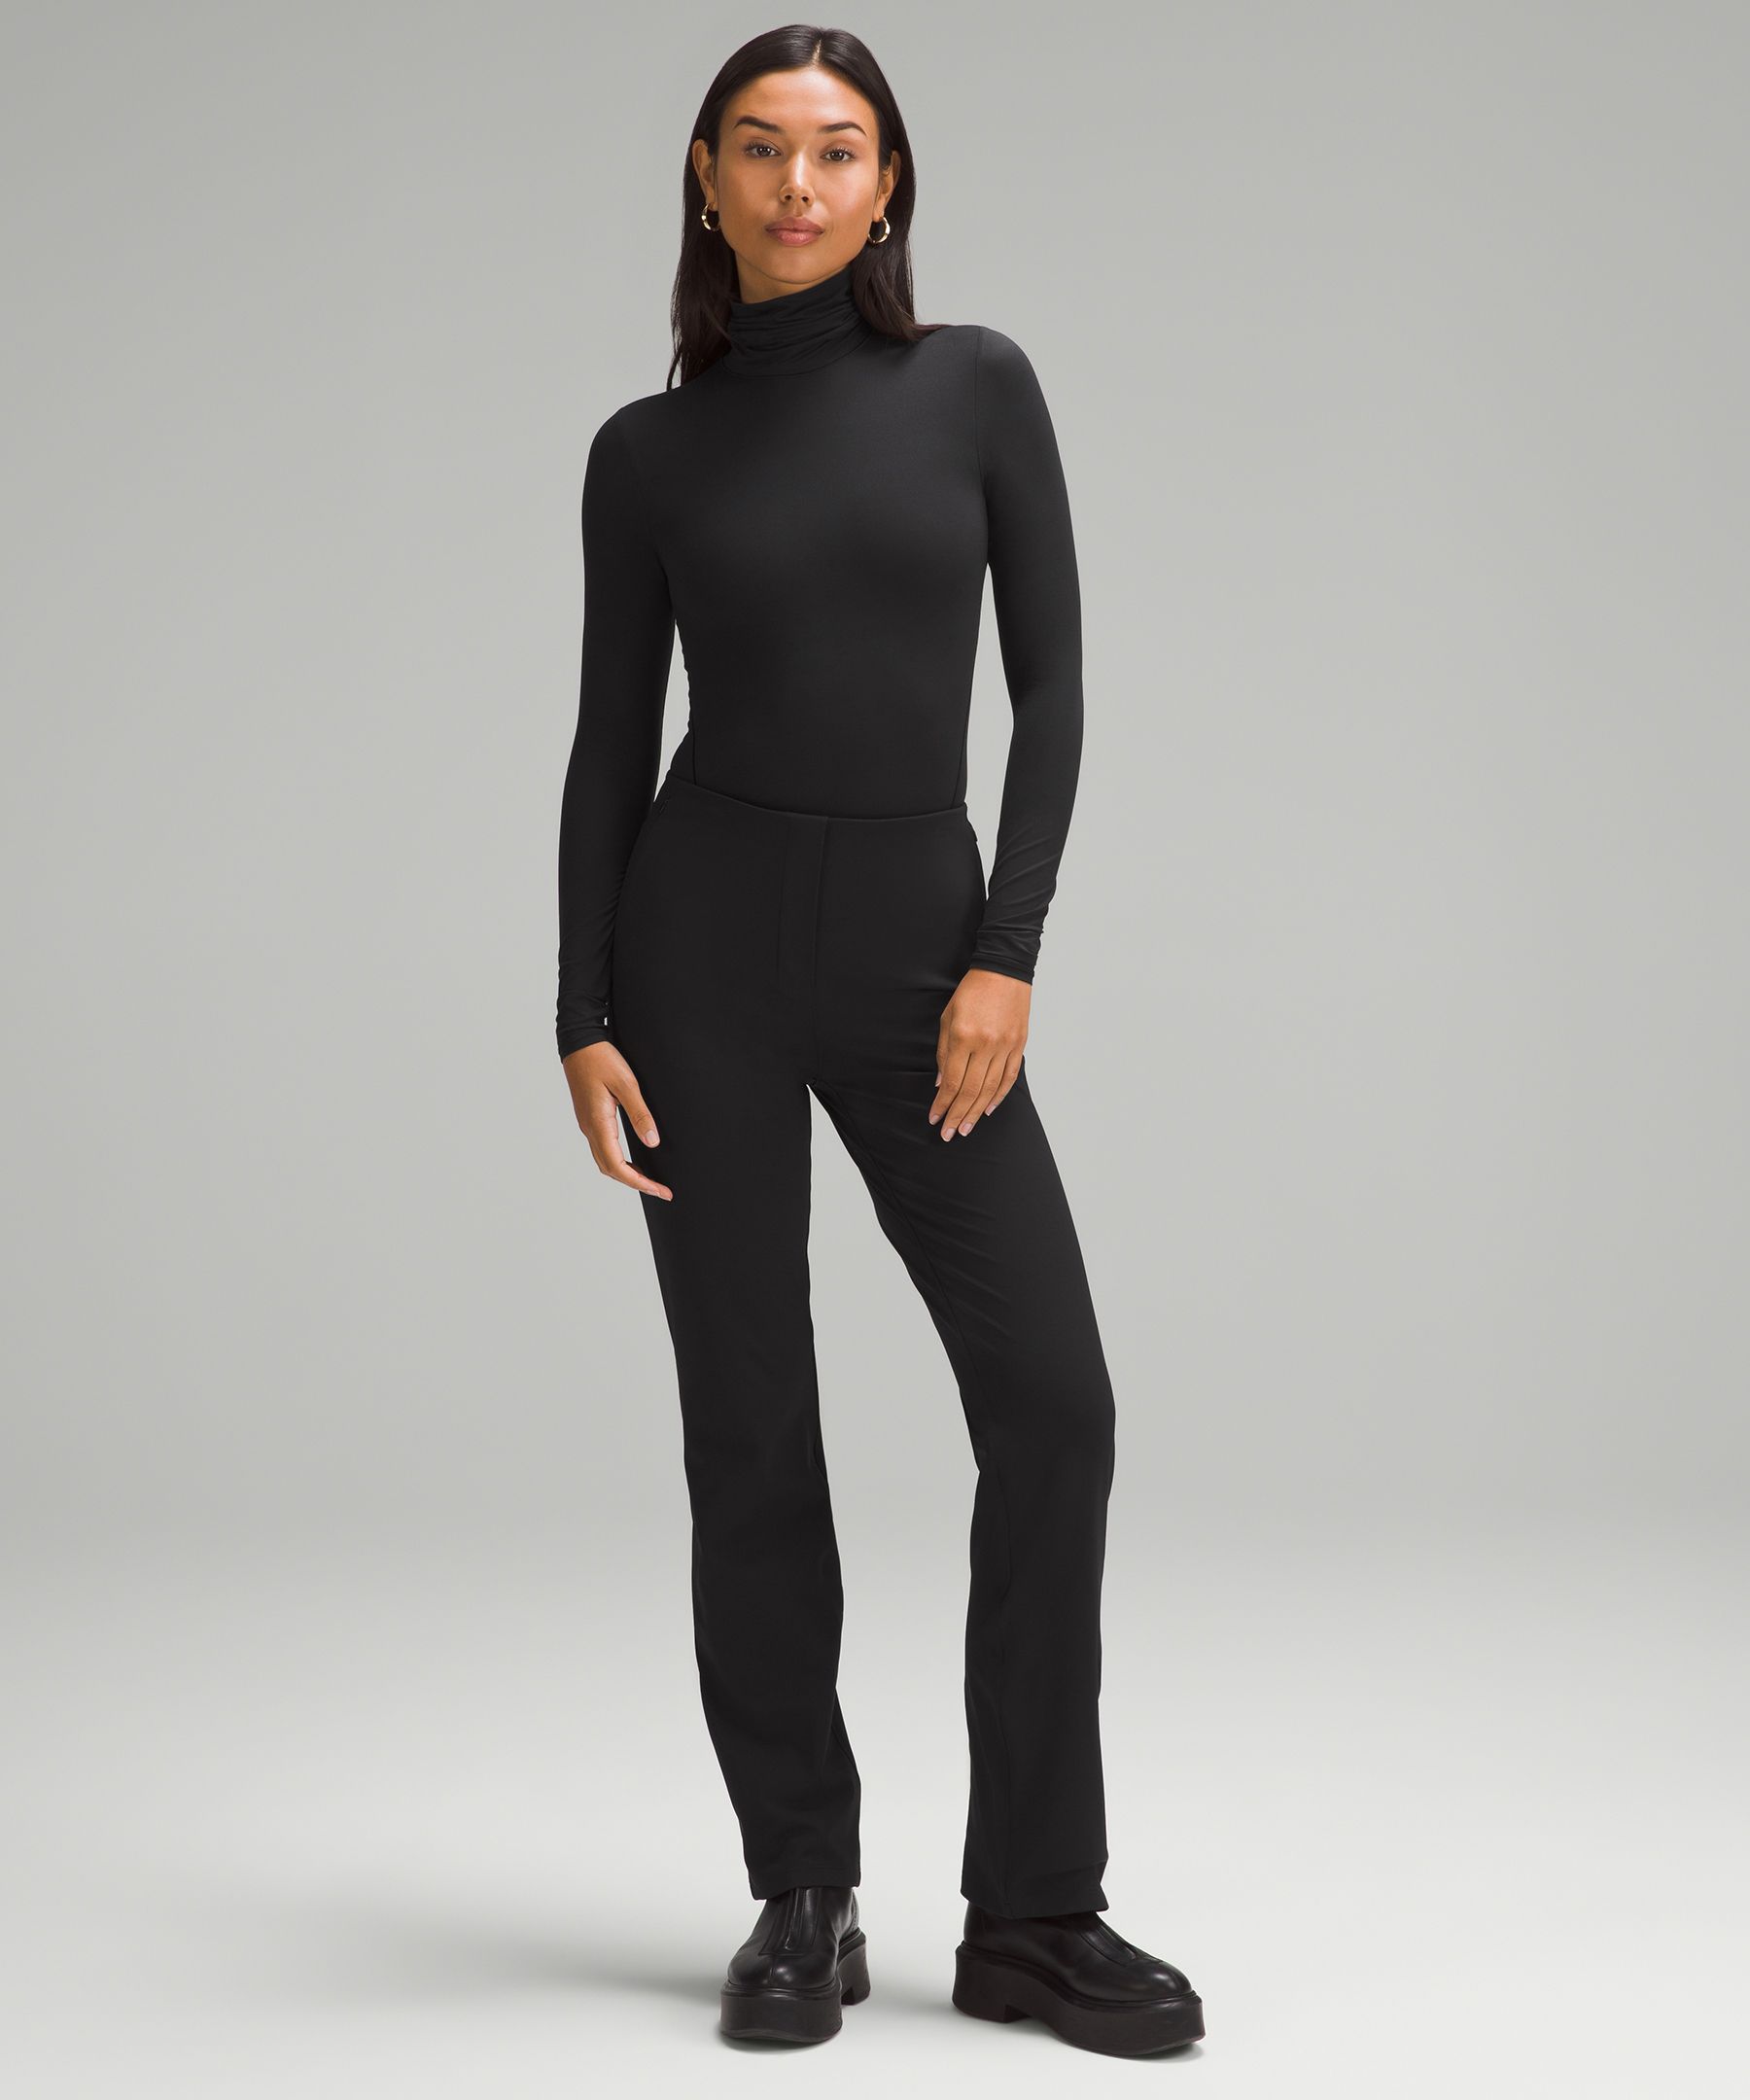 FAKKDUK Turtleneck Bodysuit for Women Knitted Lined , Long Sleeve